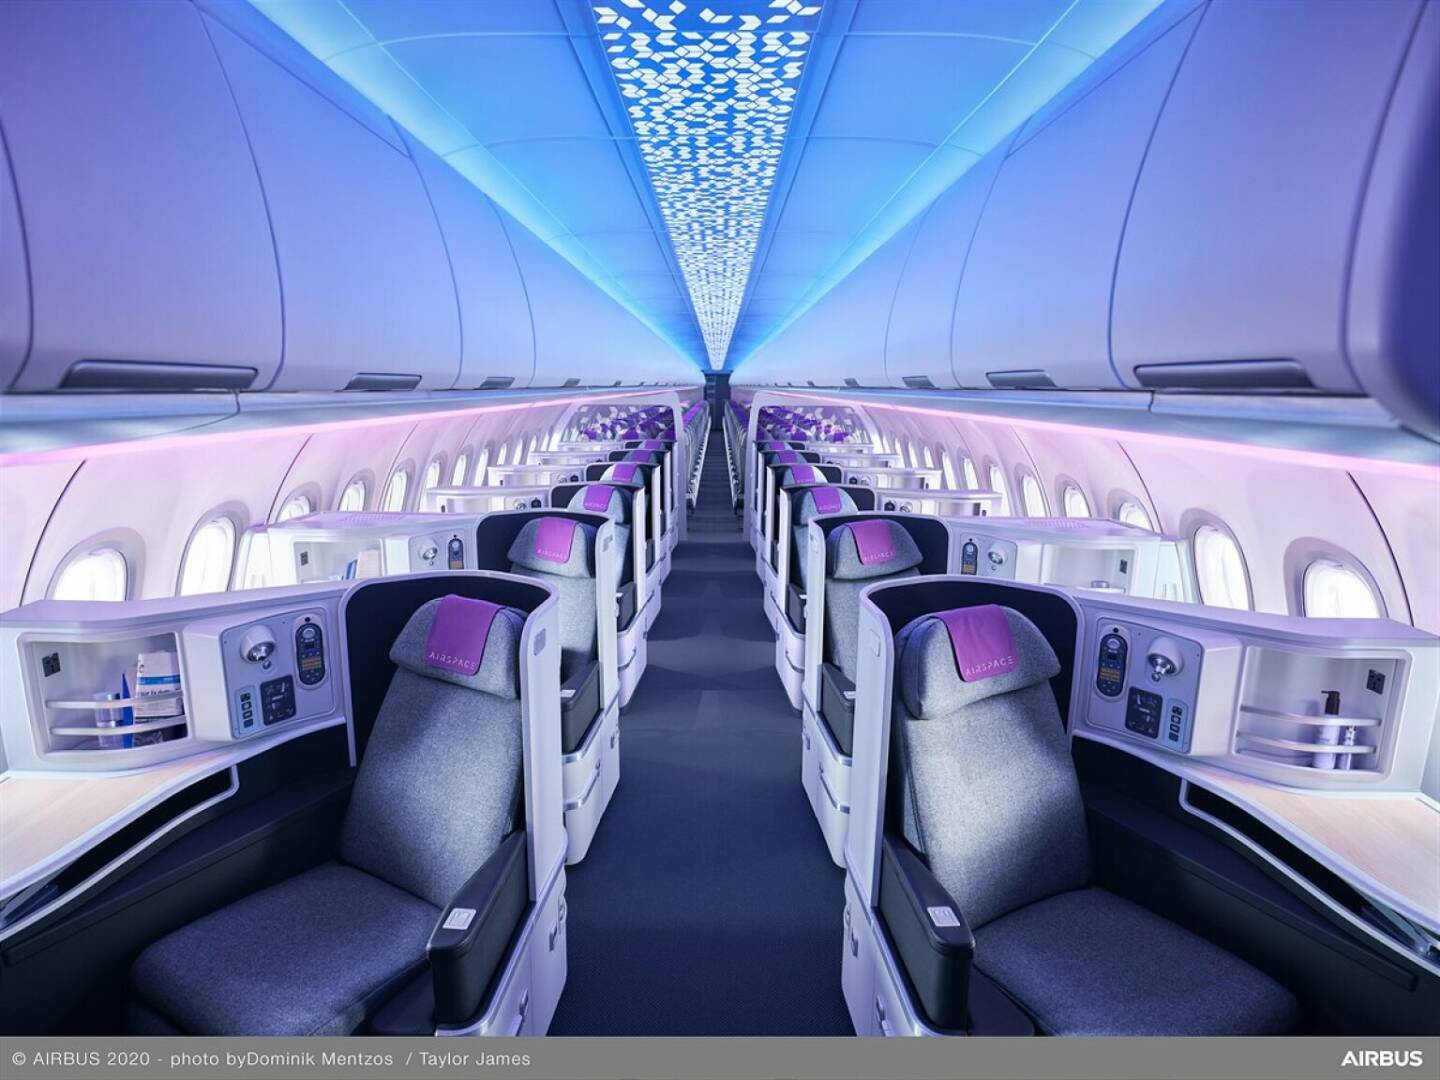 FACC ist Entwicklungs- und Fertigungspartner von Airbus bei der hochmodernen Airspace Cabin der A320 Familie und setzt mit ihren innovativen Komponenten neue Maßstäbe für das Innenleben von Passagierflugzeugen. © Airbus/Dominic Mentzos, Taylor James